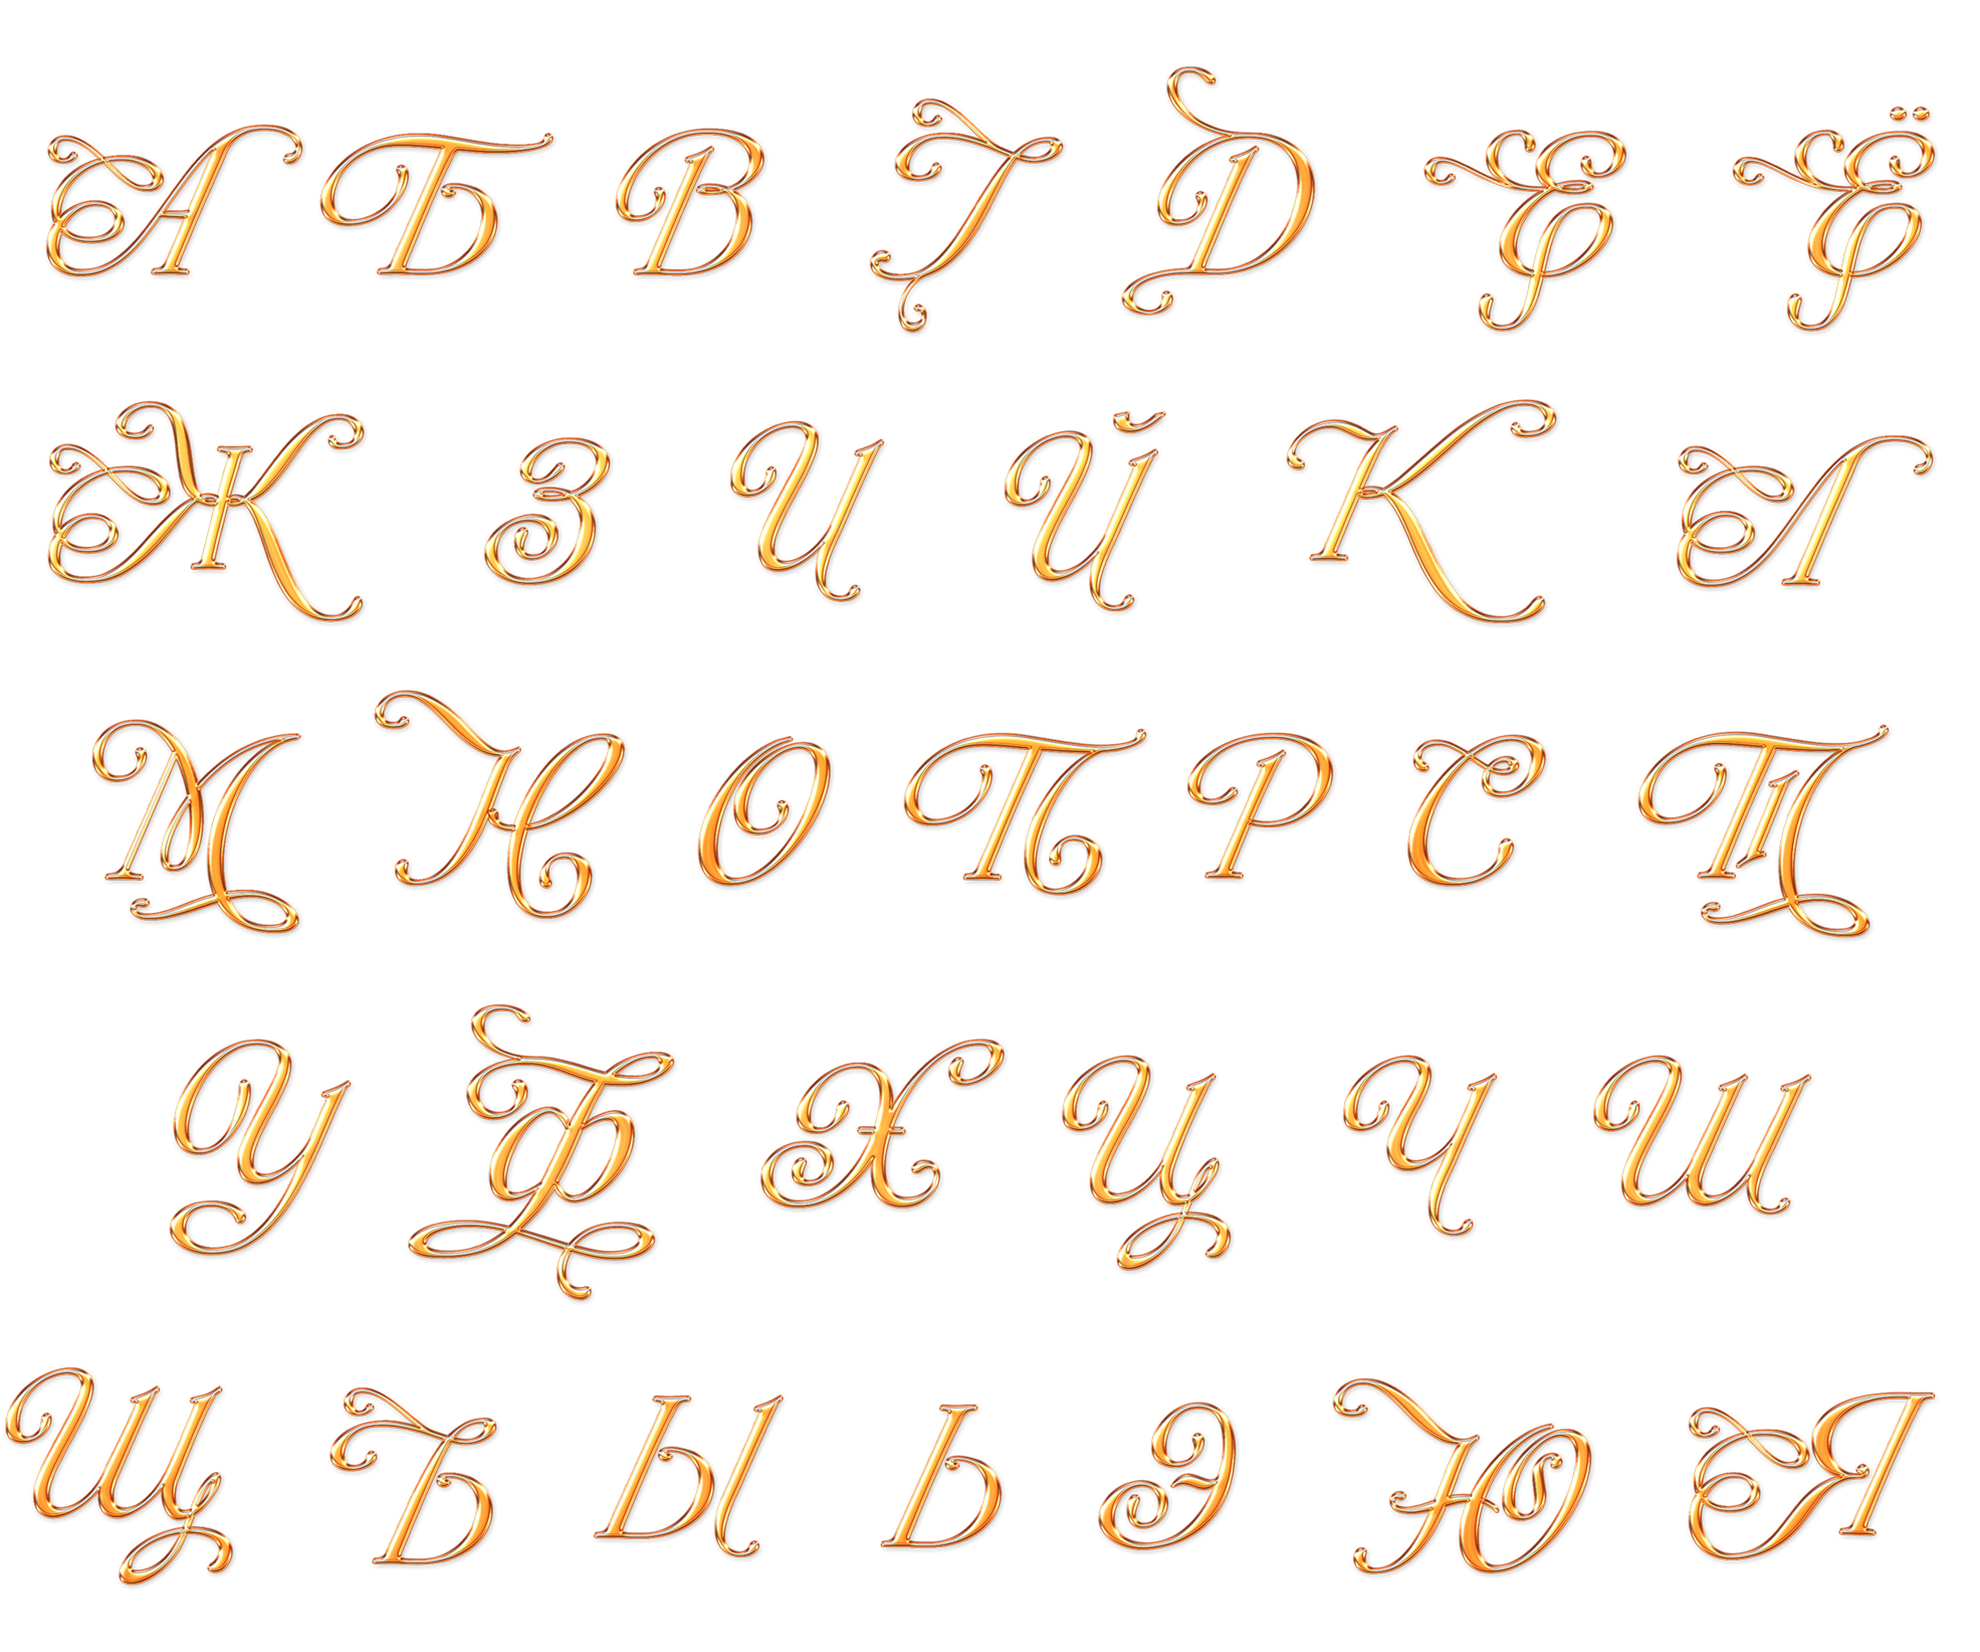 Русский алфавит красивое написание. Красивые буквы алфавита. Русский алфавит красивыми буквами. Красивое написание букв. Буква д красивая.